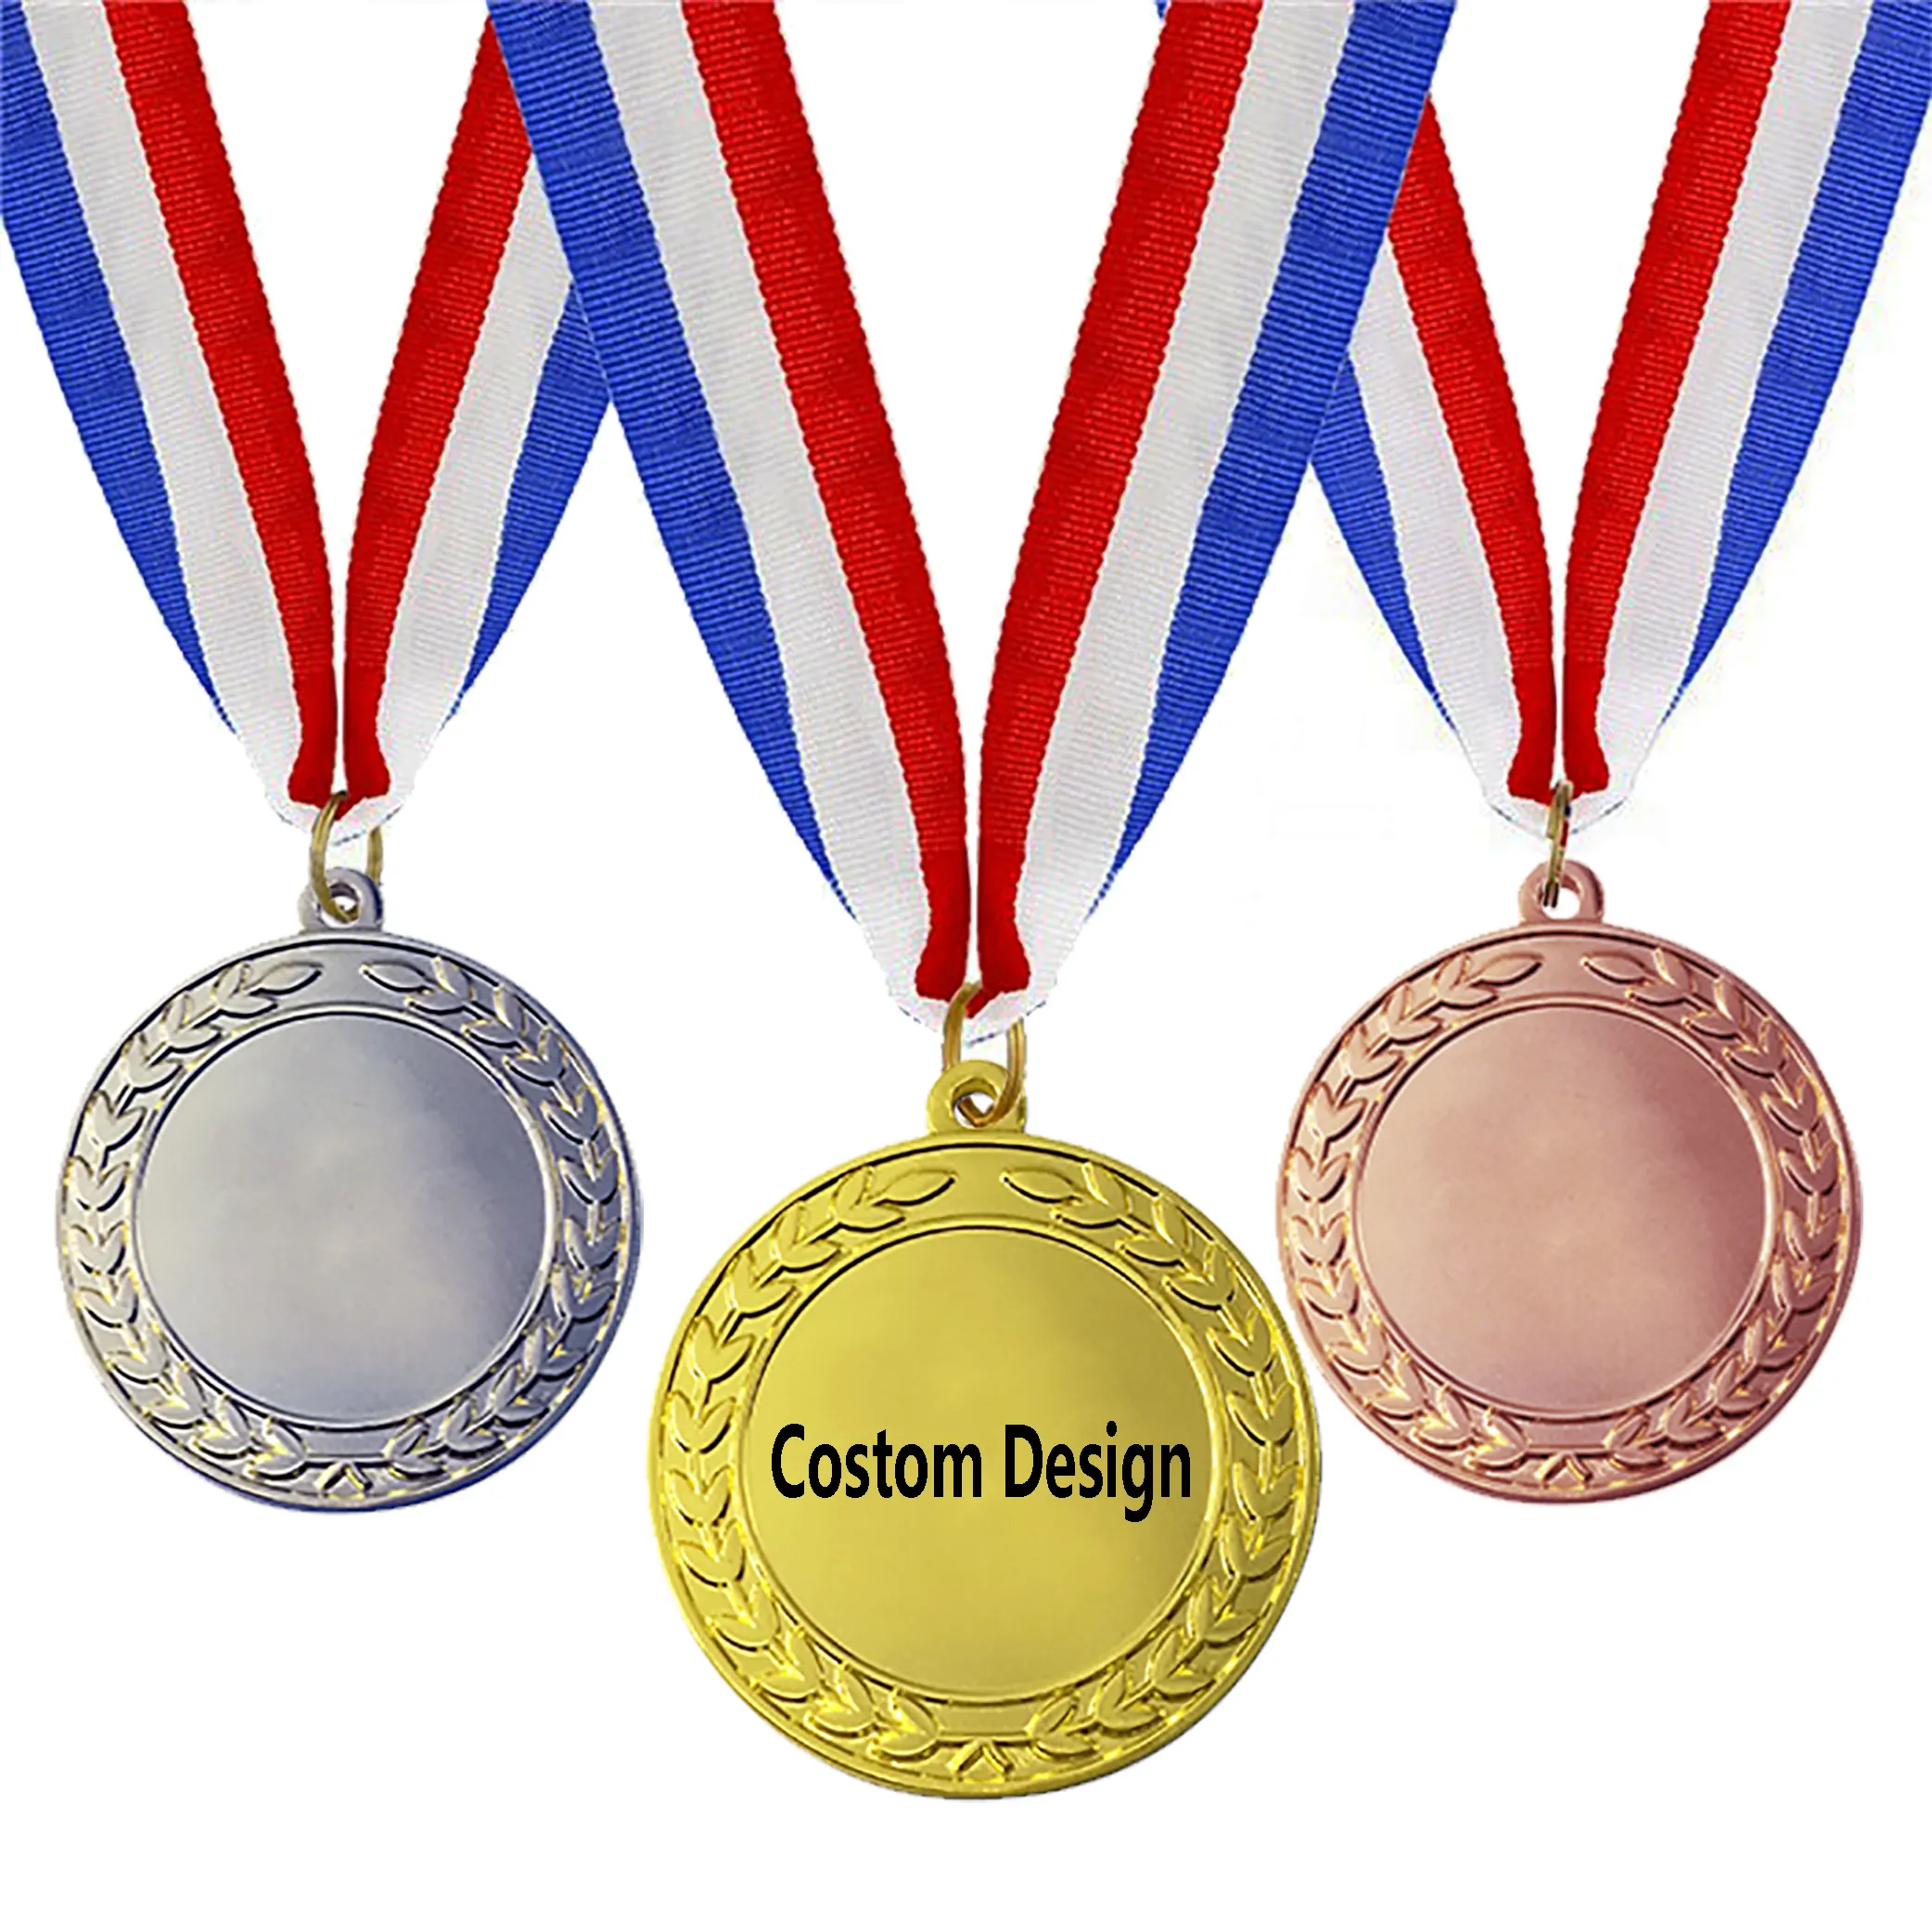 Medallas de Deportes de maratón en miniatura, medallas de sublimación de Honor, oro, plata y bronce, color blanco, barata, venta al por mayor